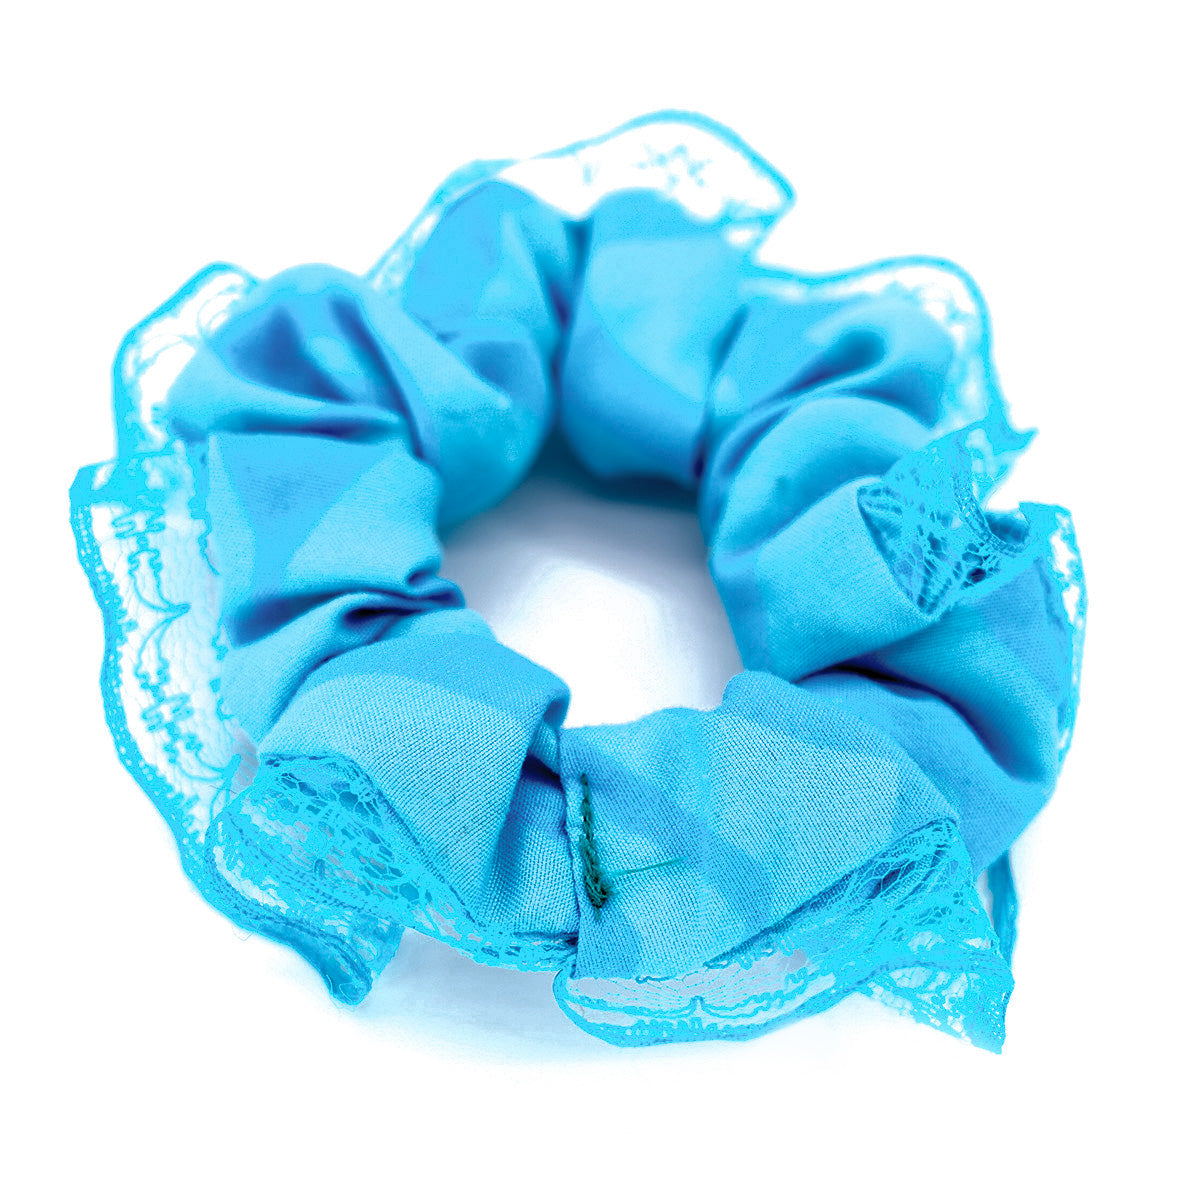 Handsewn Lace Scrunchie Set - Blue & Blue